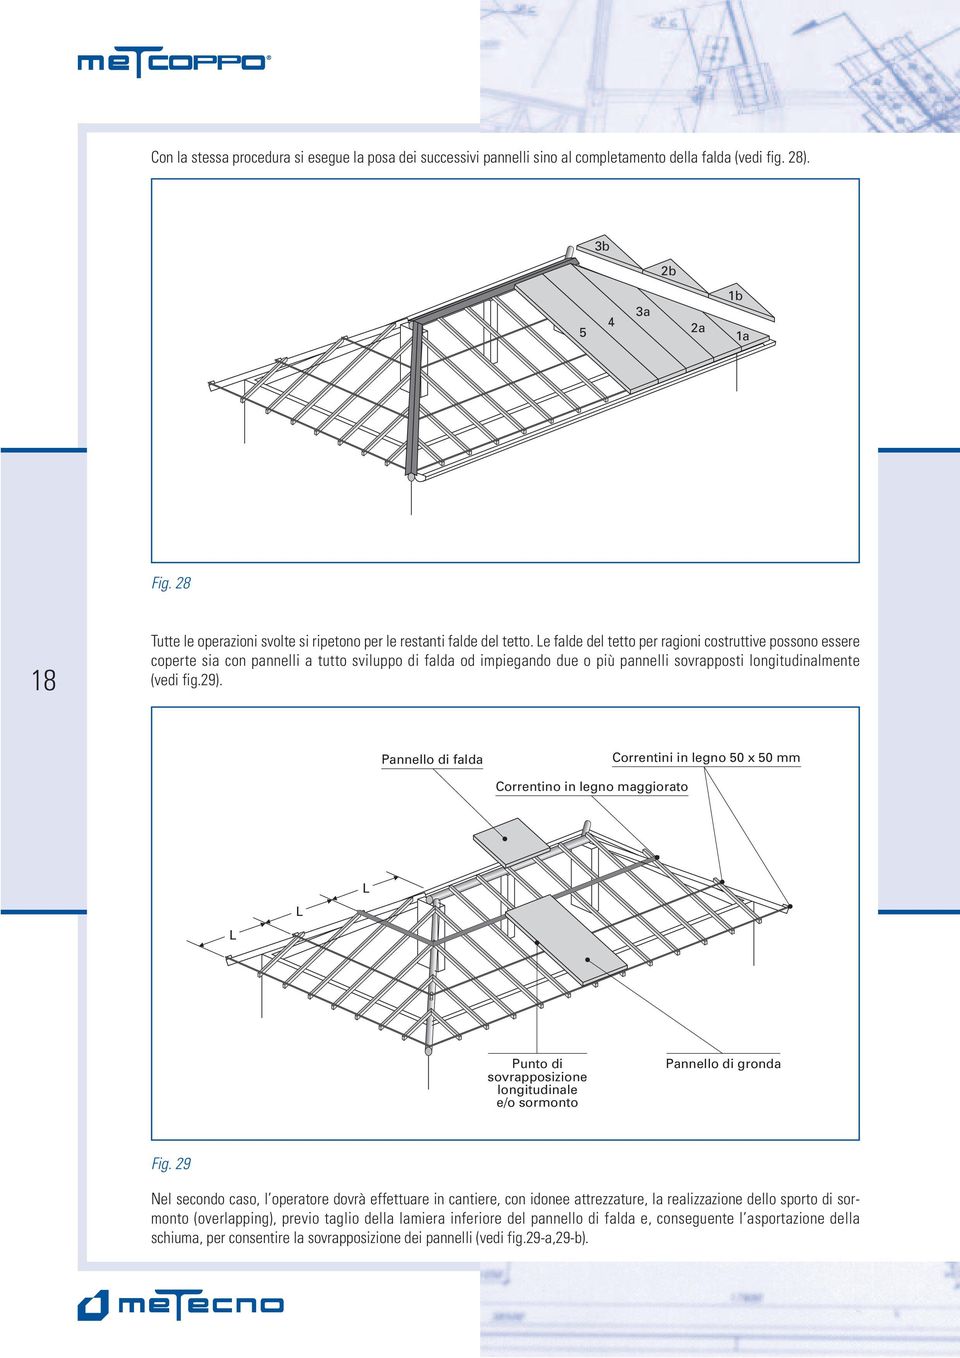 Le falde del tetto per ragioni costruttive possono essere coperte sia con pannelli a tutto sviluppo di falda od impiegando due o più pannelli sovrapposti longitudinalmente (vedi fig.29).